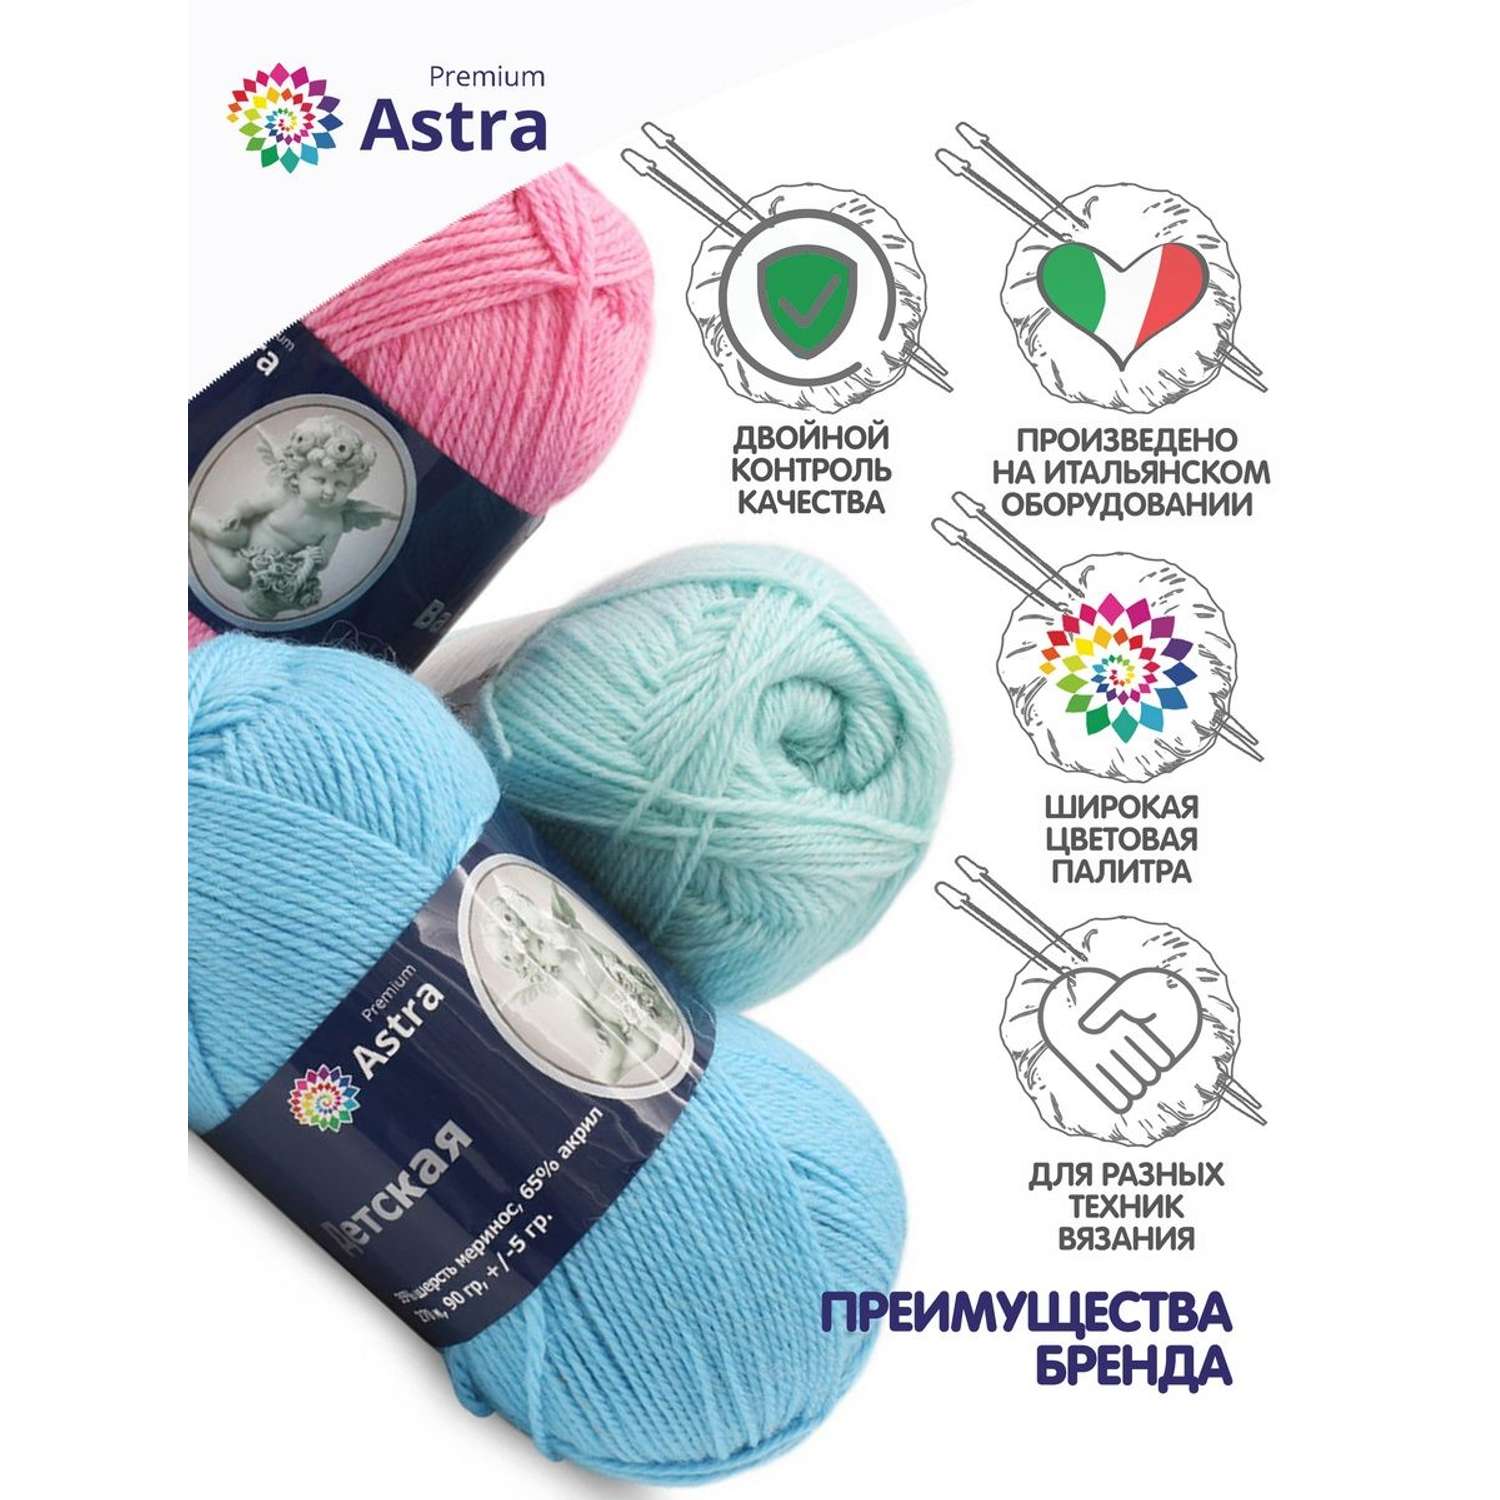 Пряжа для вязания Astra Premium детская из акрила и шерсти для детских вещей 90 гр 270 м 008 серебристый 3 мотка - фото 3